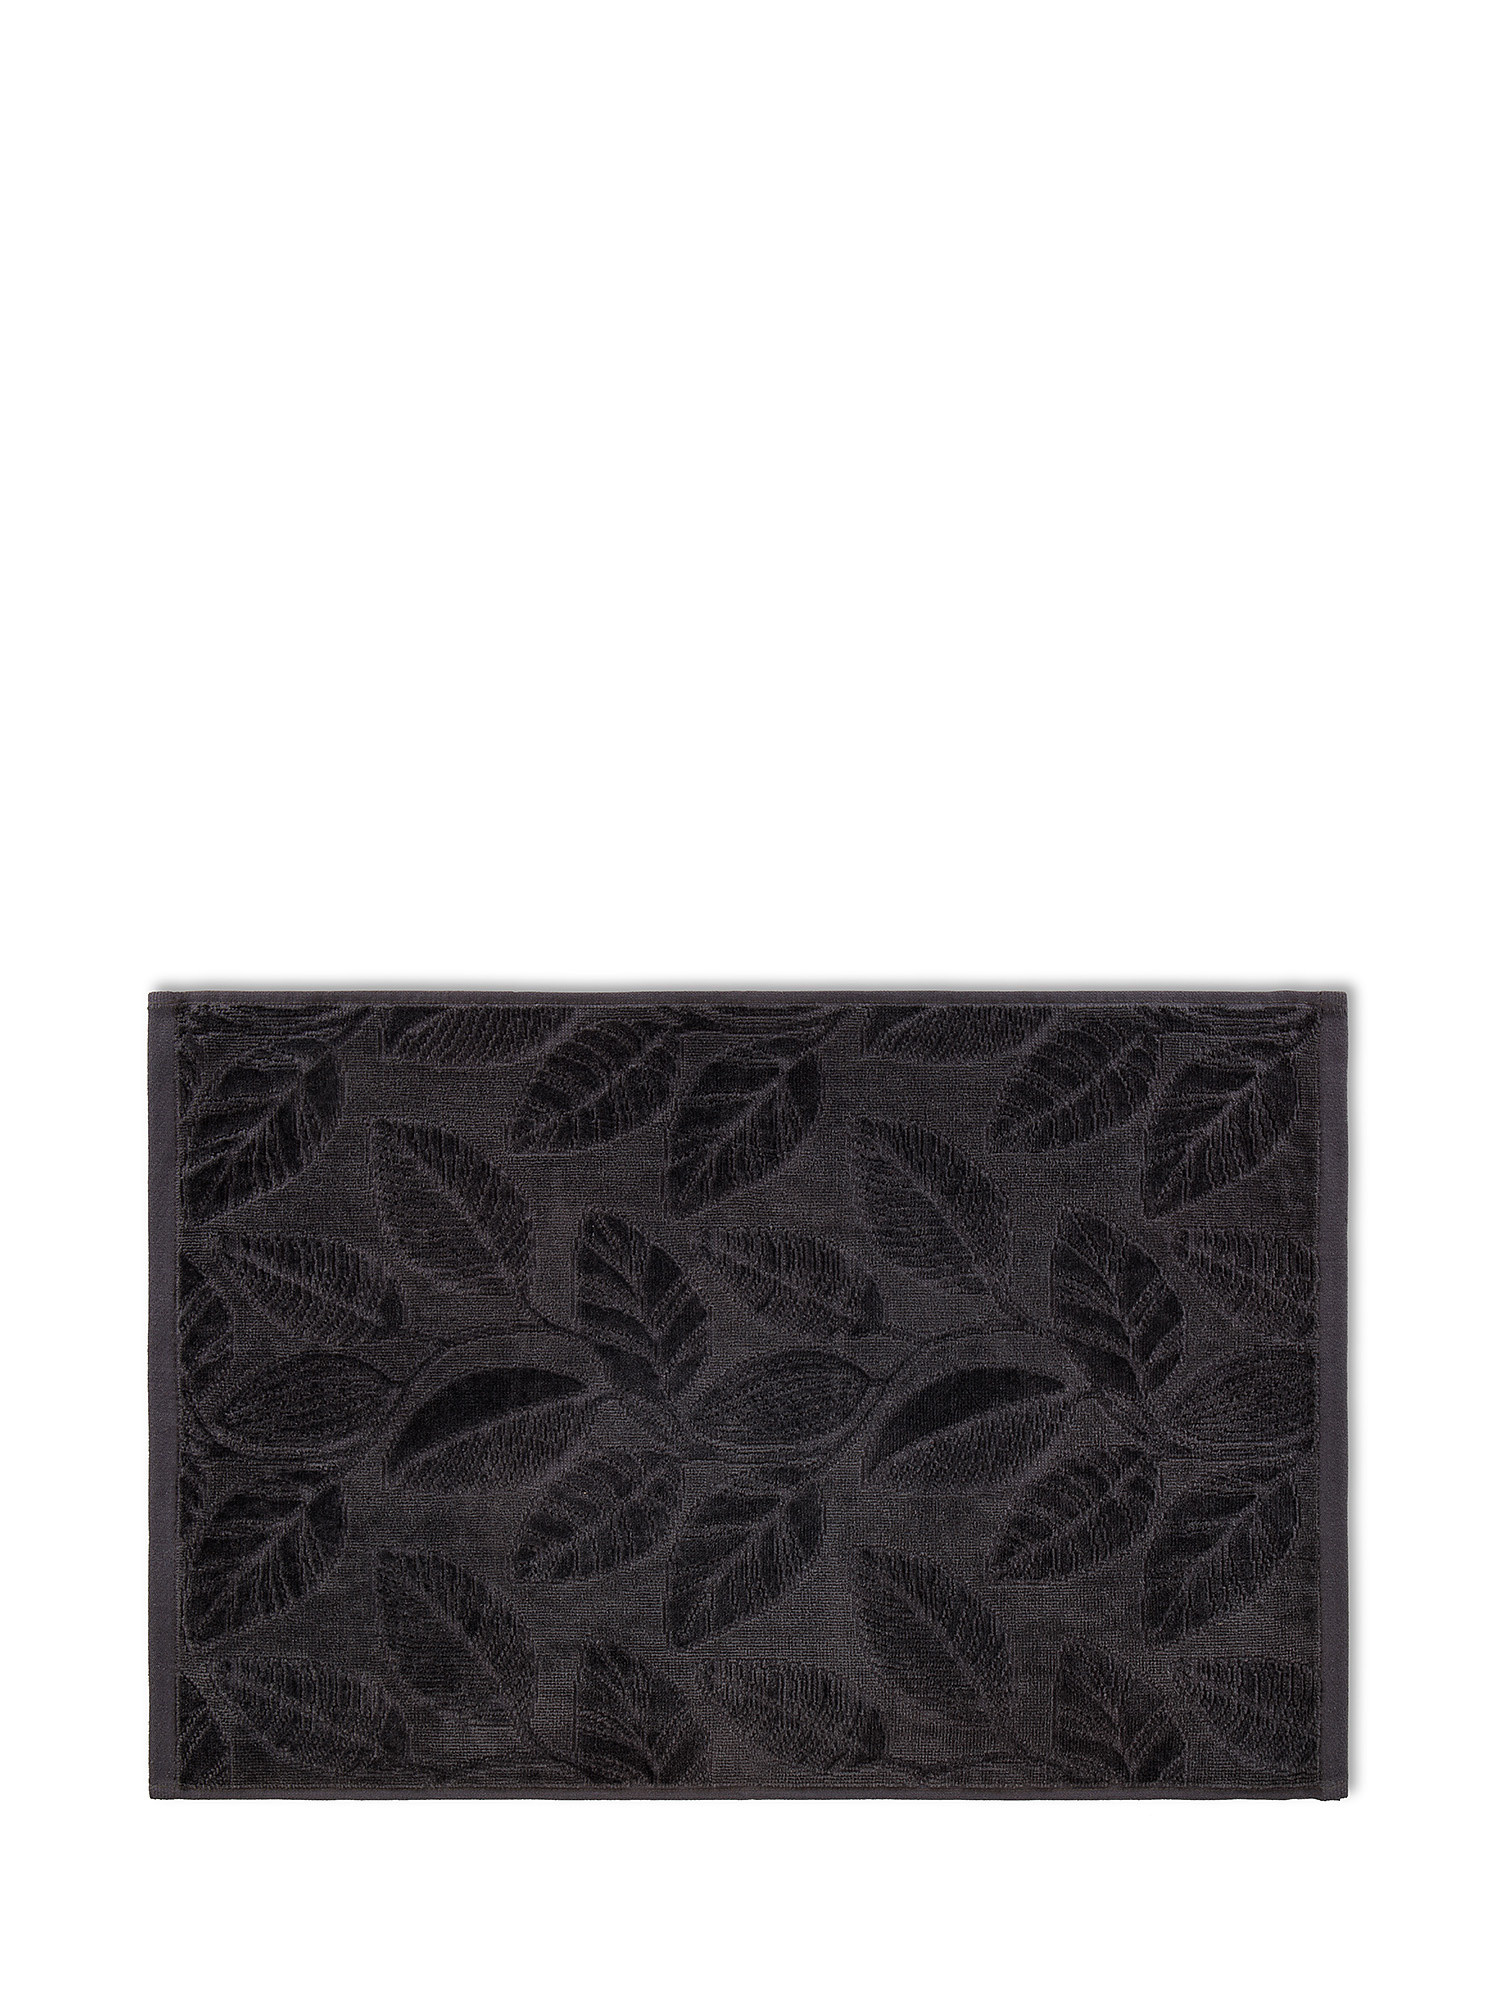 Asciugamano cotone velour motivo a fiori, Grigio, large image number 1